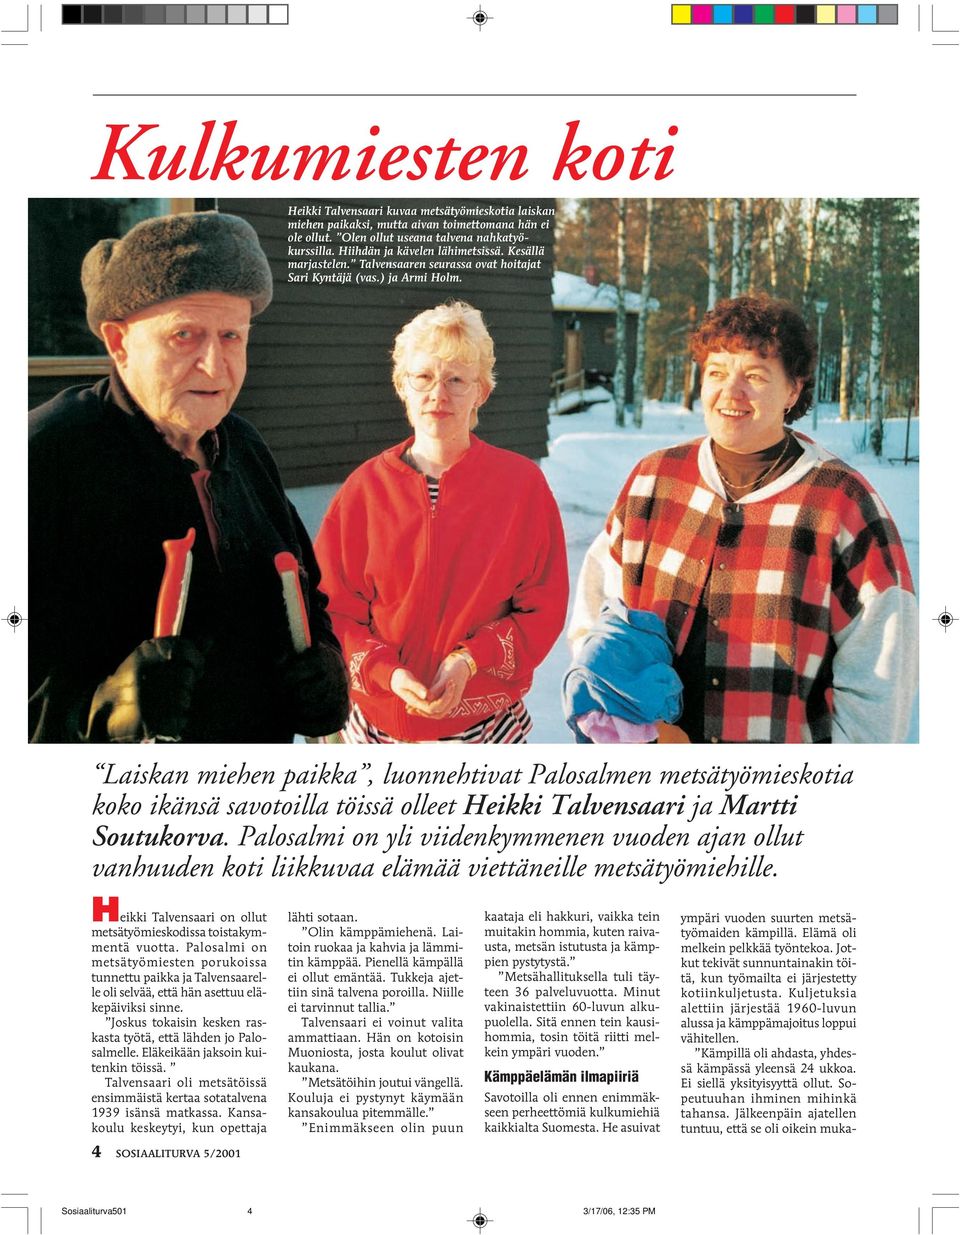 Laiskan miehen paikka, luonnehtivat Palosalmen metsätyömieskotia koko ikänsä savotoilla töissä olleet Heikki Talvensaari ja Martti Soutukorva.